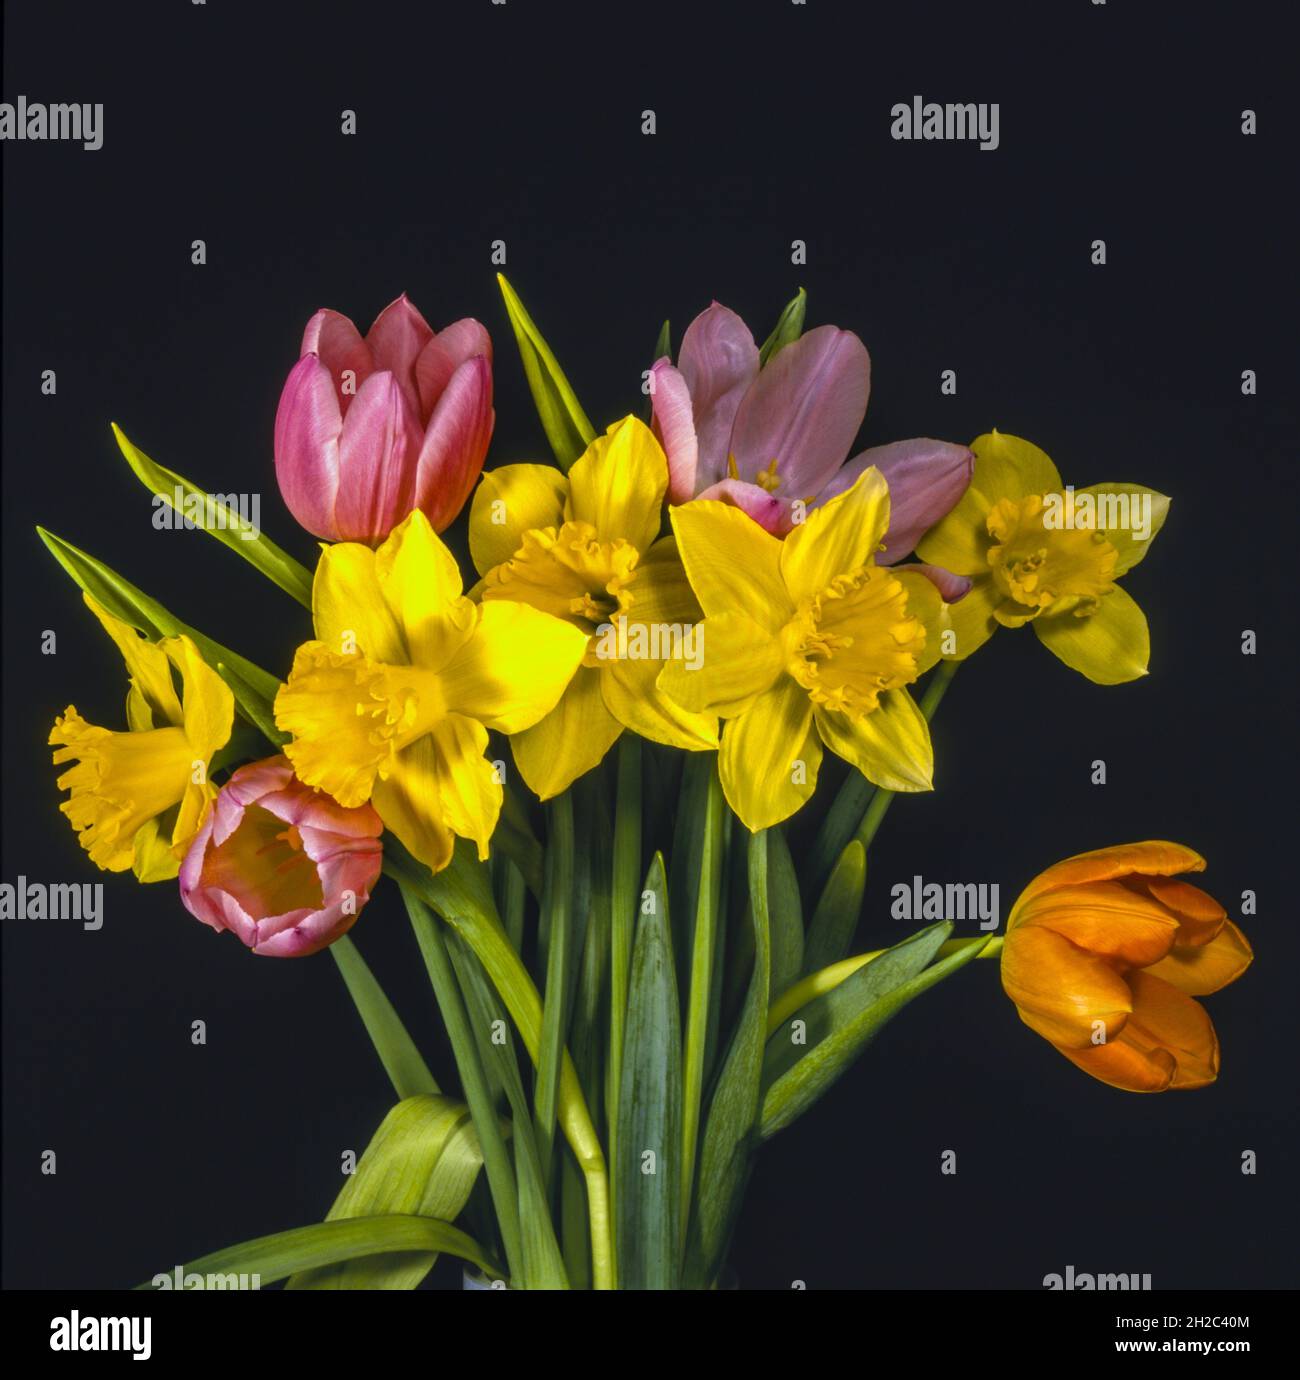 tulipani rosa e arancione, insieme a narcissus nero anista giallo Foto Stock